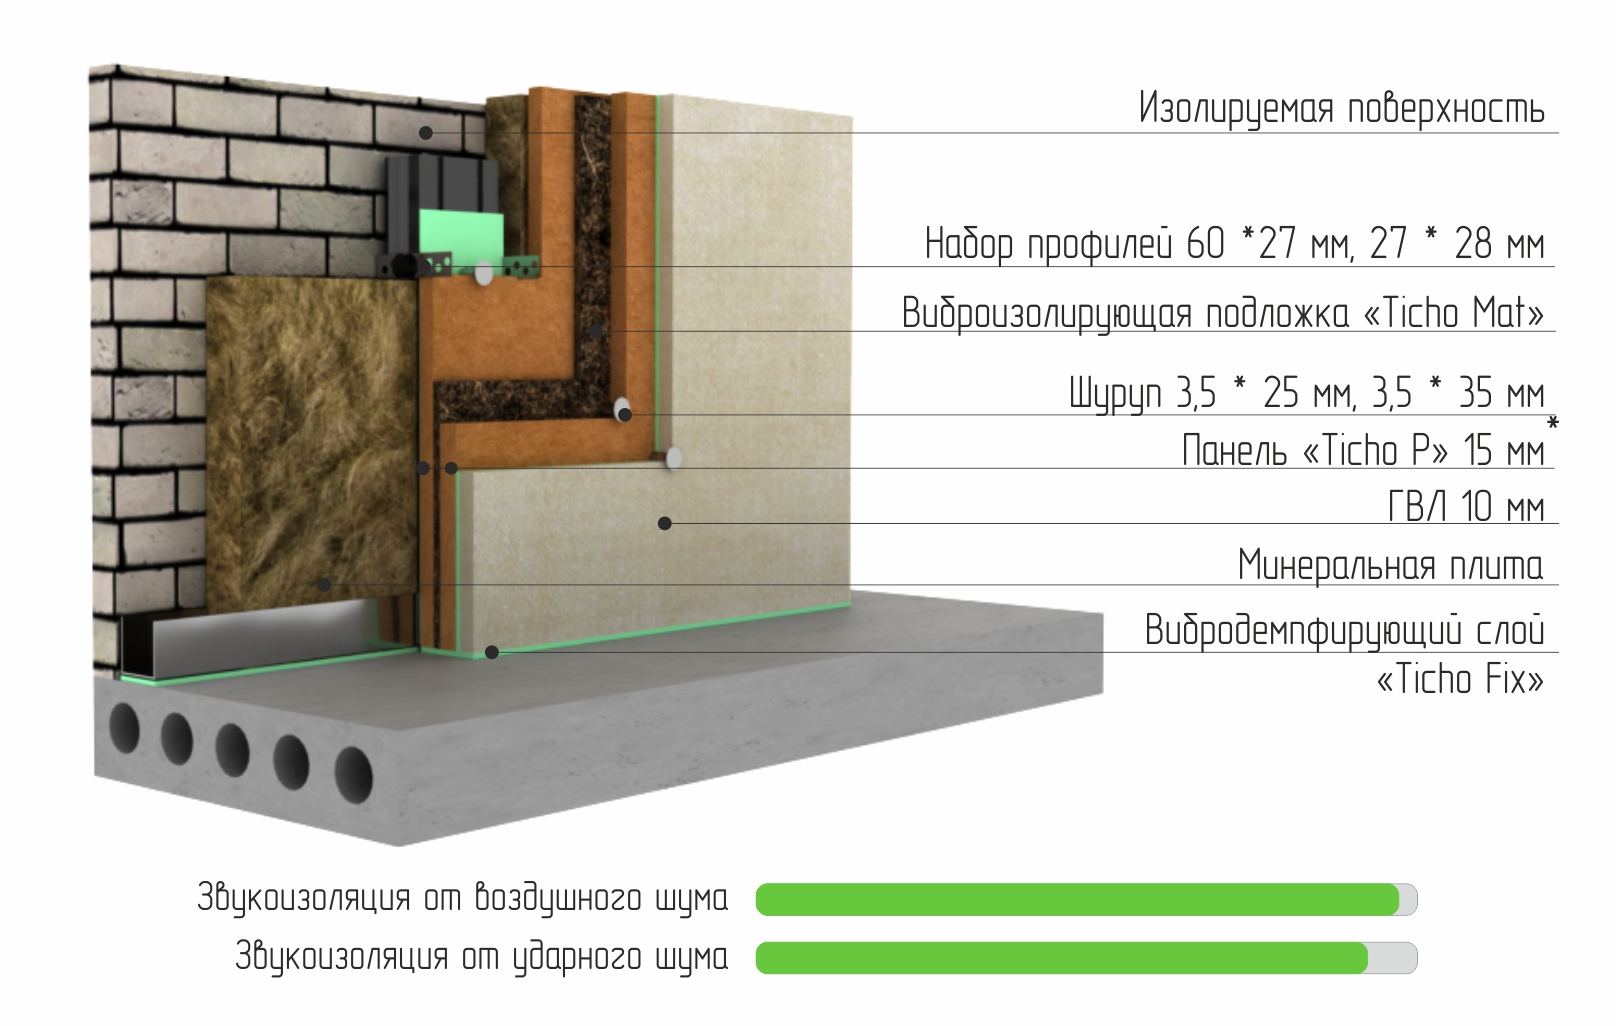 Звукоизоляция стен отзывы. Бескаркасная система звукоизоляции стен слим п. Каркасная система звукоизоляции стен «премиум м1». Шумоизоляция готовые решения. Бескаркасная шумоизоляция стен.